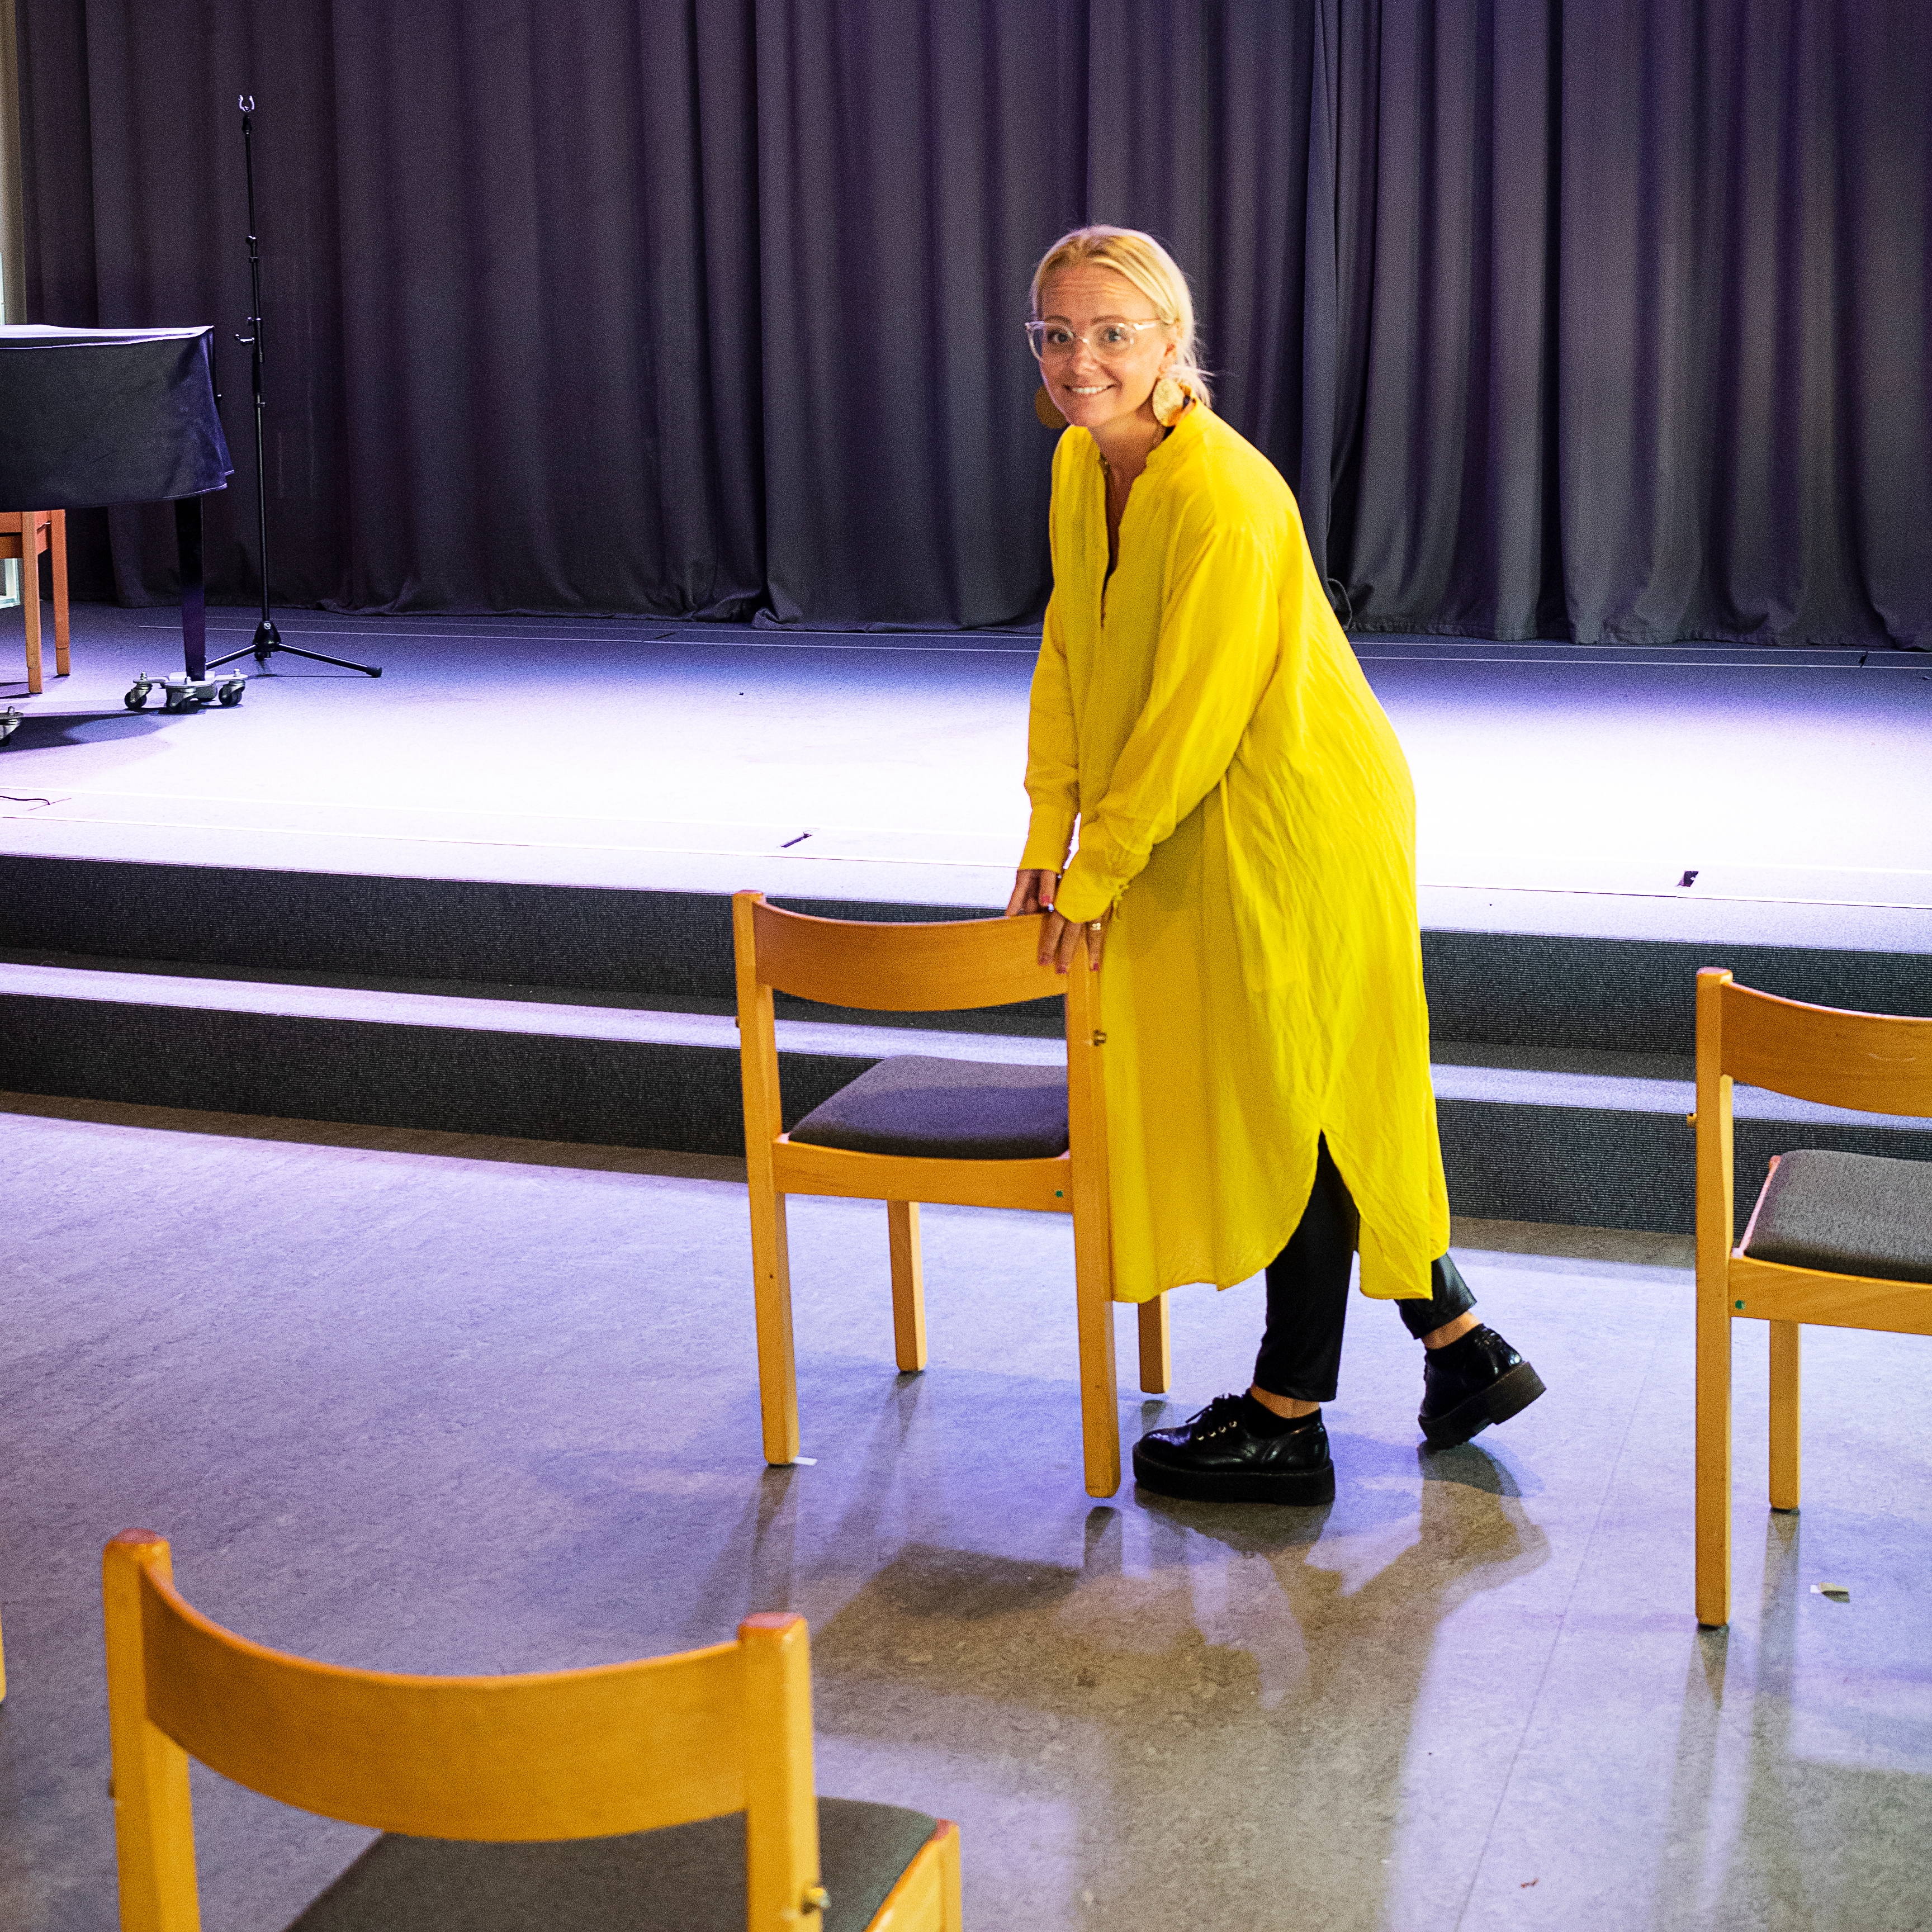 Anna-Kaisa Wahlin, pastor i Jönköping Pingst. "Provmöblering inför söndagen", skriver Pingst Jönköping på sin Facebooksida, där de lägger ut en bild på glest utplacerade stolar i församlingsvåningen.